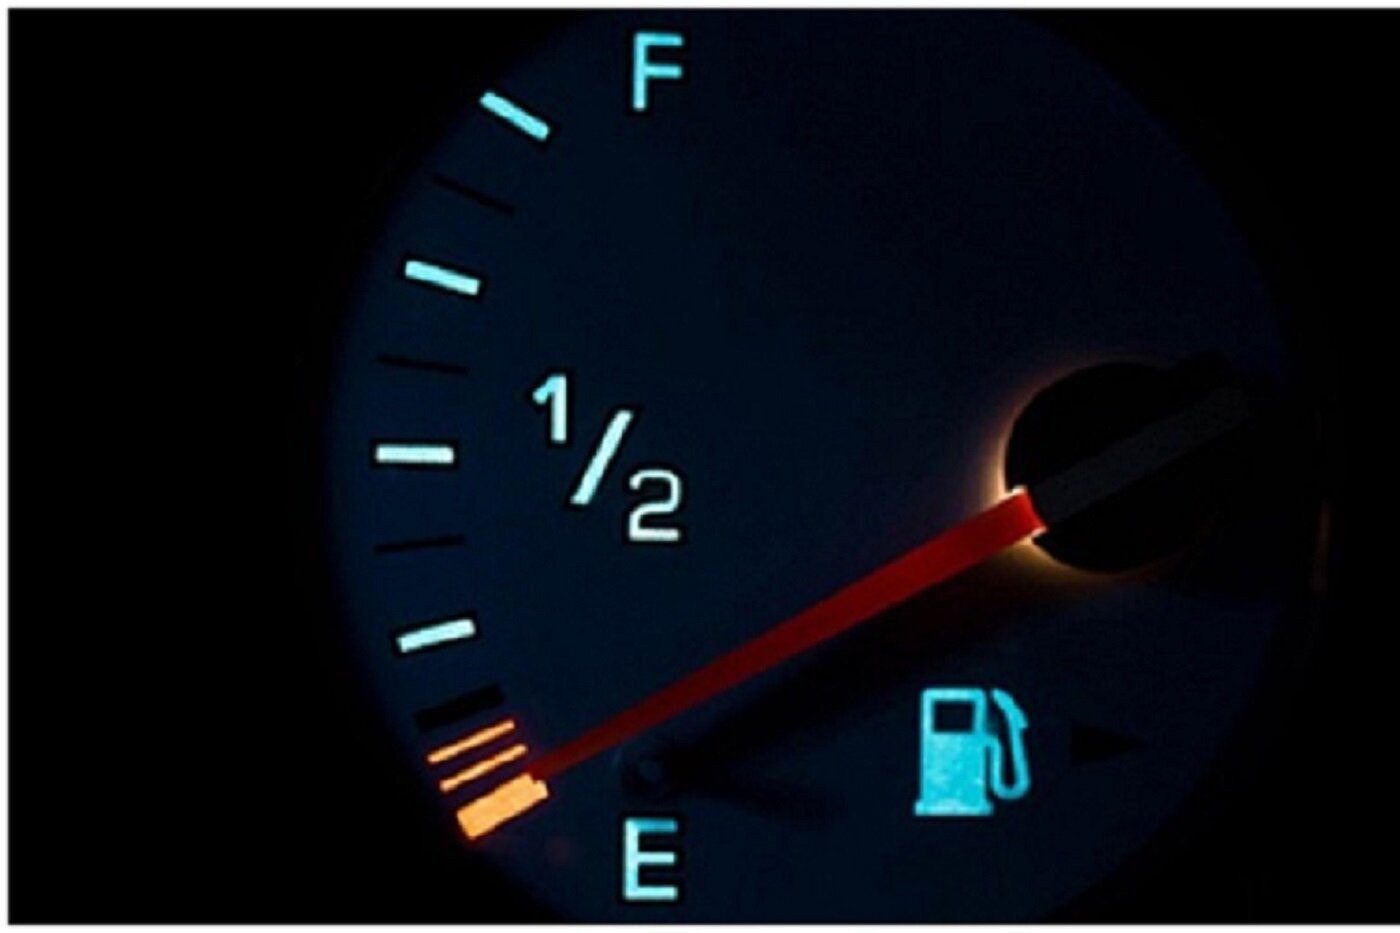 Nhiều tài xế có thói quen để bình xăng ô tô cạn kiệt mới đổ, điều này khiến xe có thể chết máy đột ngột giữa đường. (Ảnh minh họa).